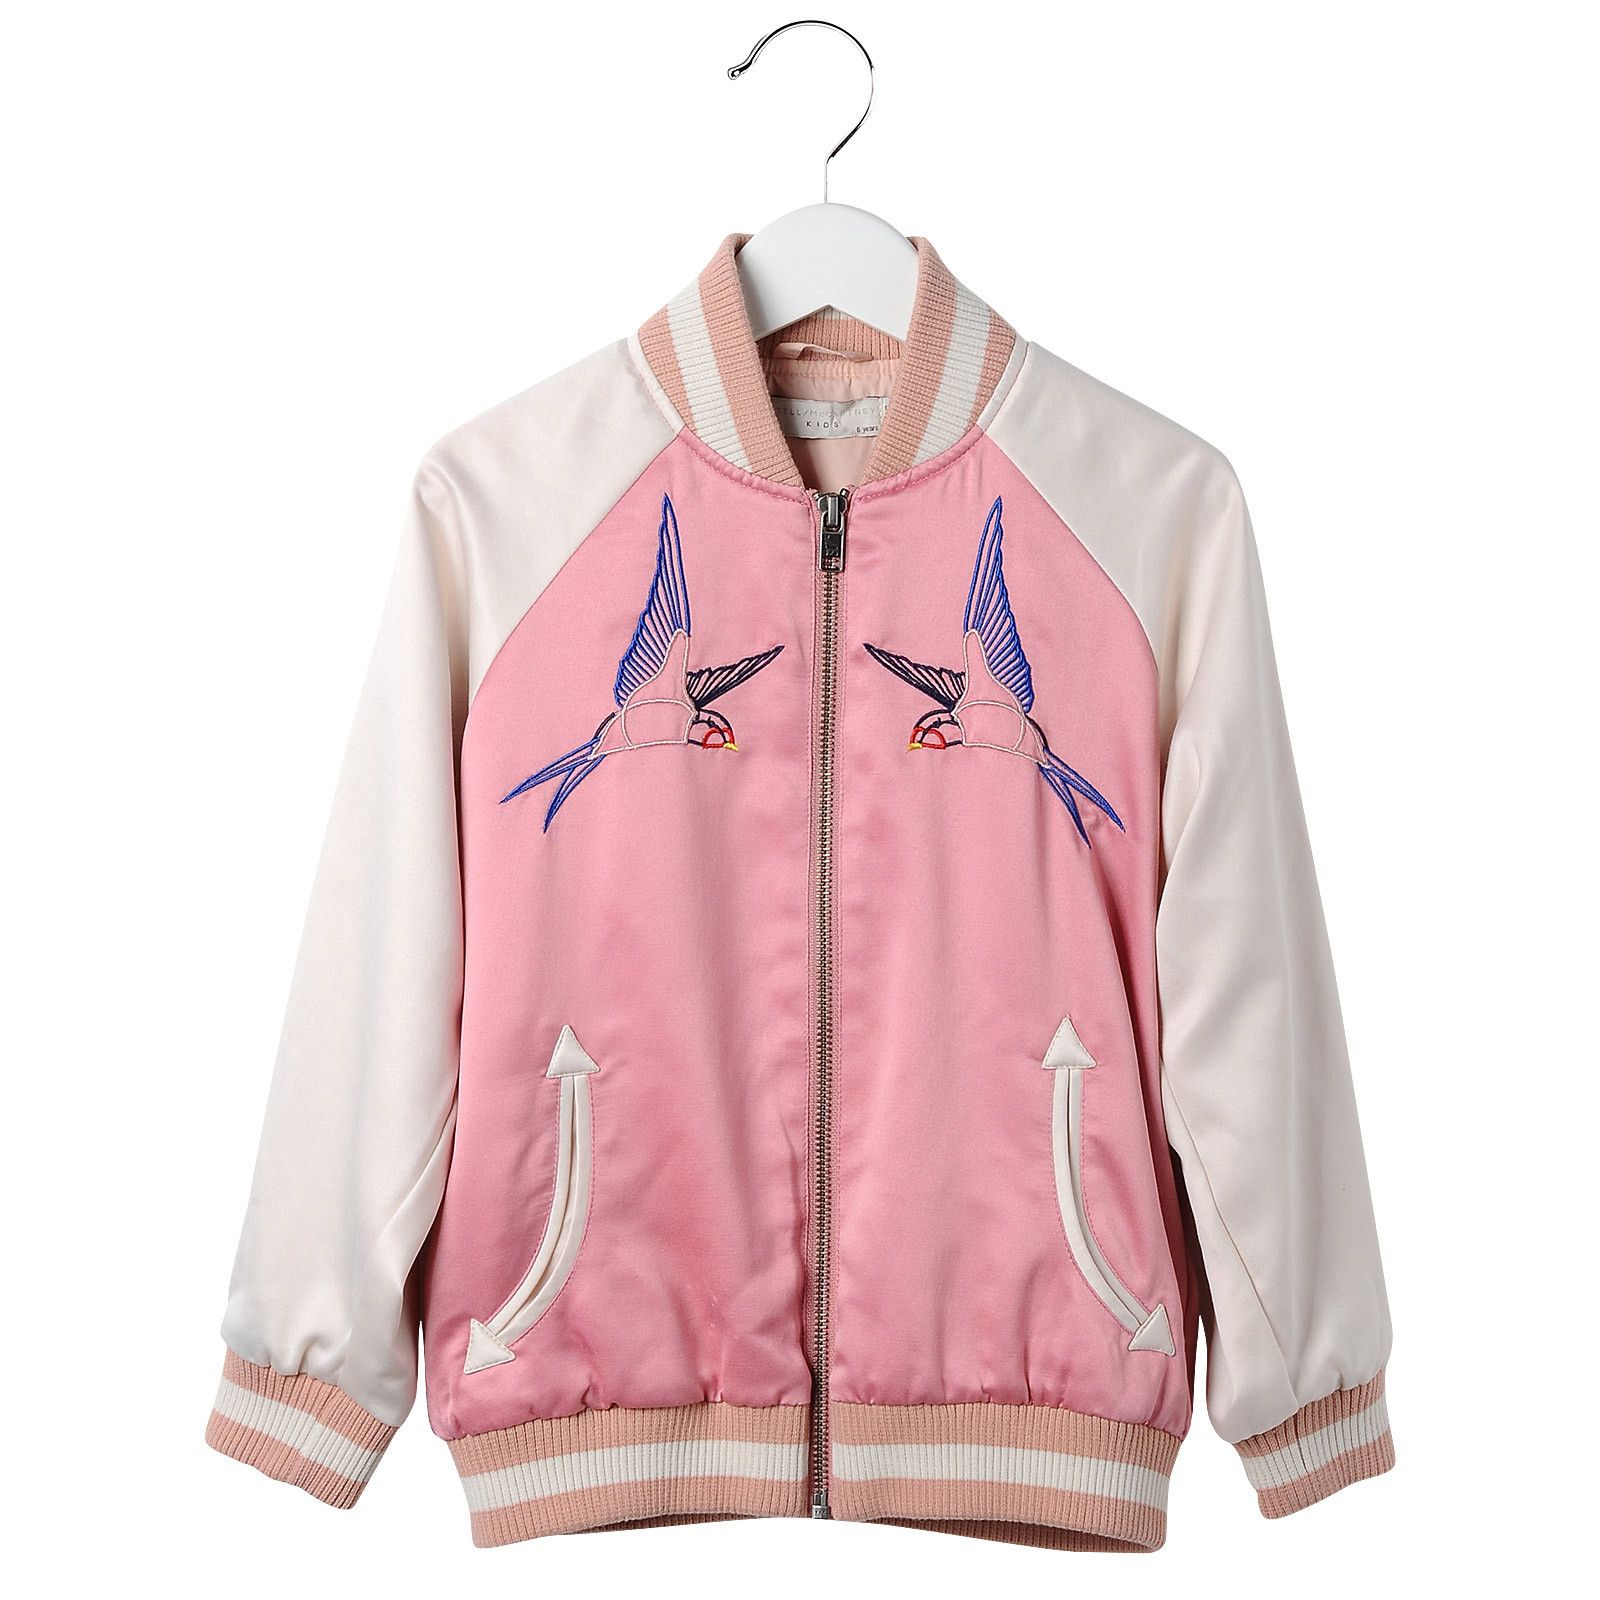 Girls Pink Cotton Embroidered Bird Trims Jacket - CÉMAROSE | Children's Fashion Store - 1